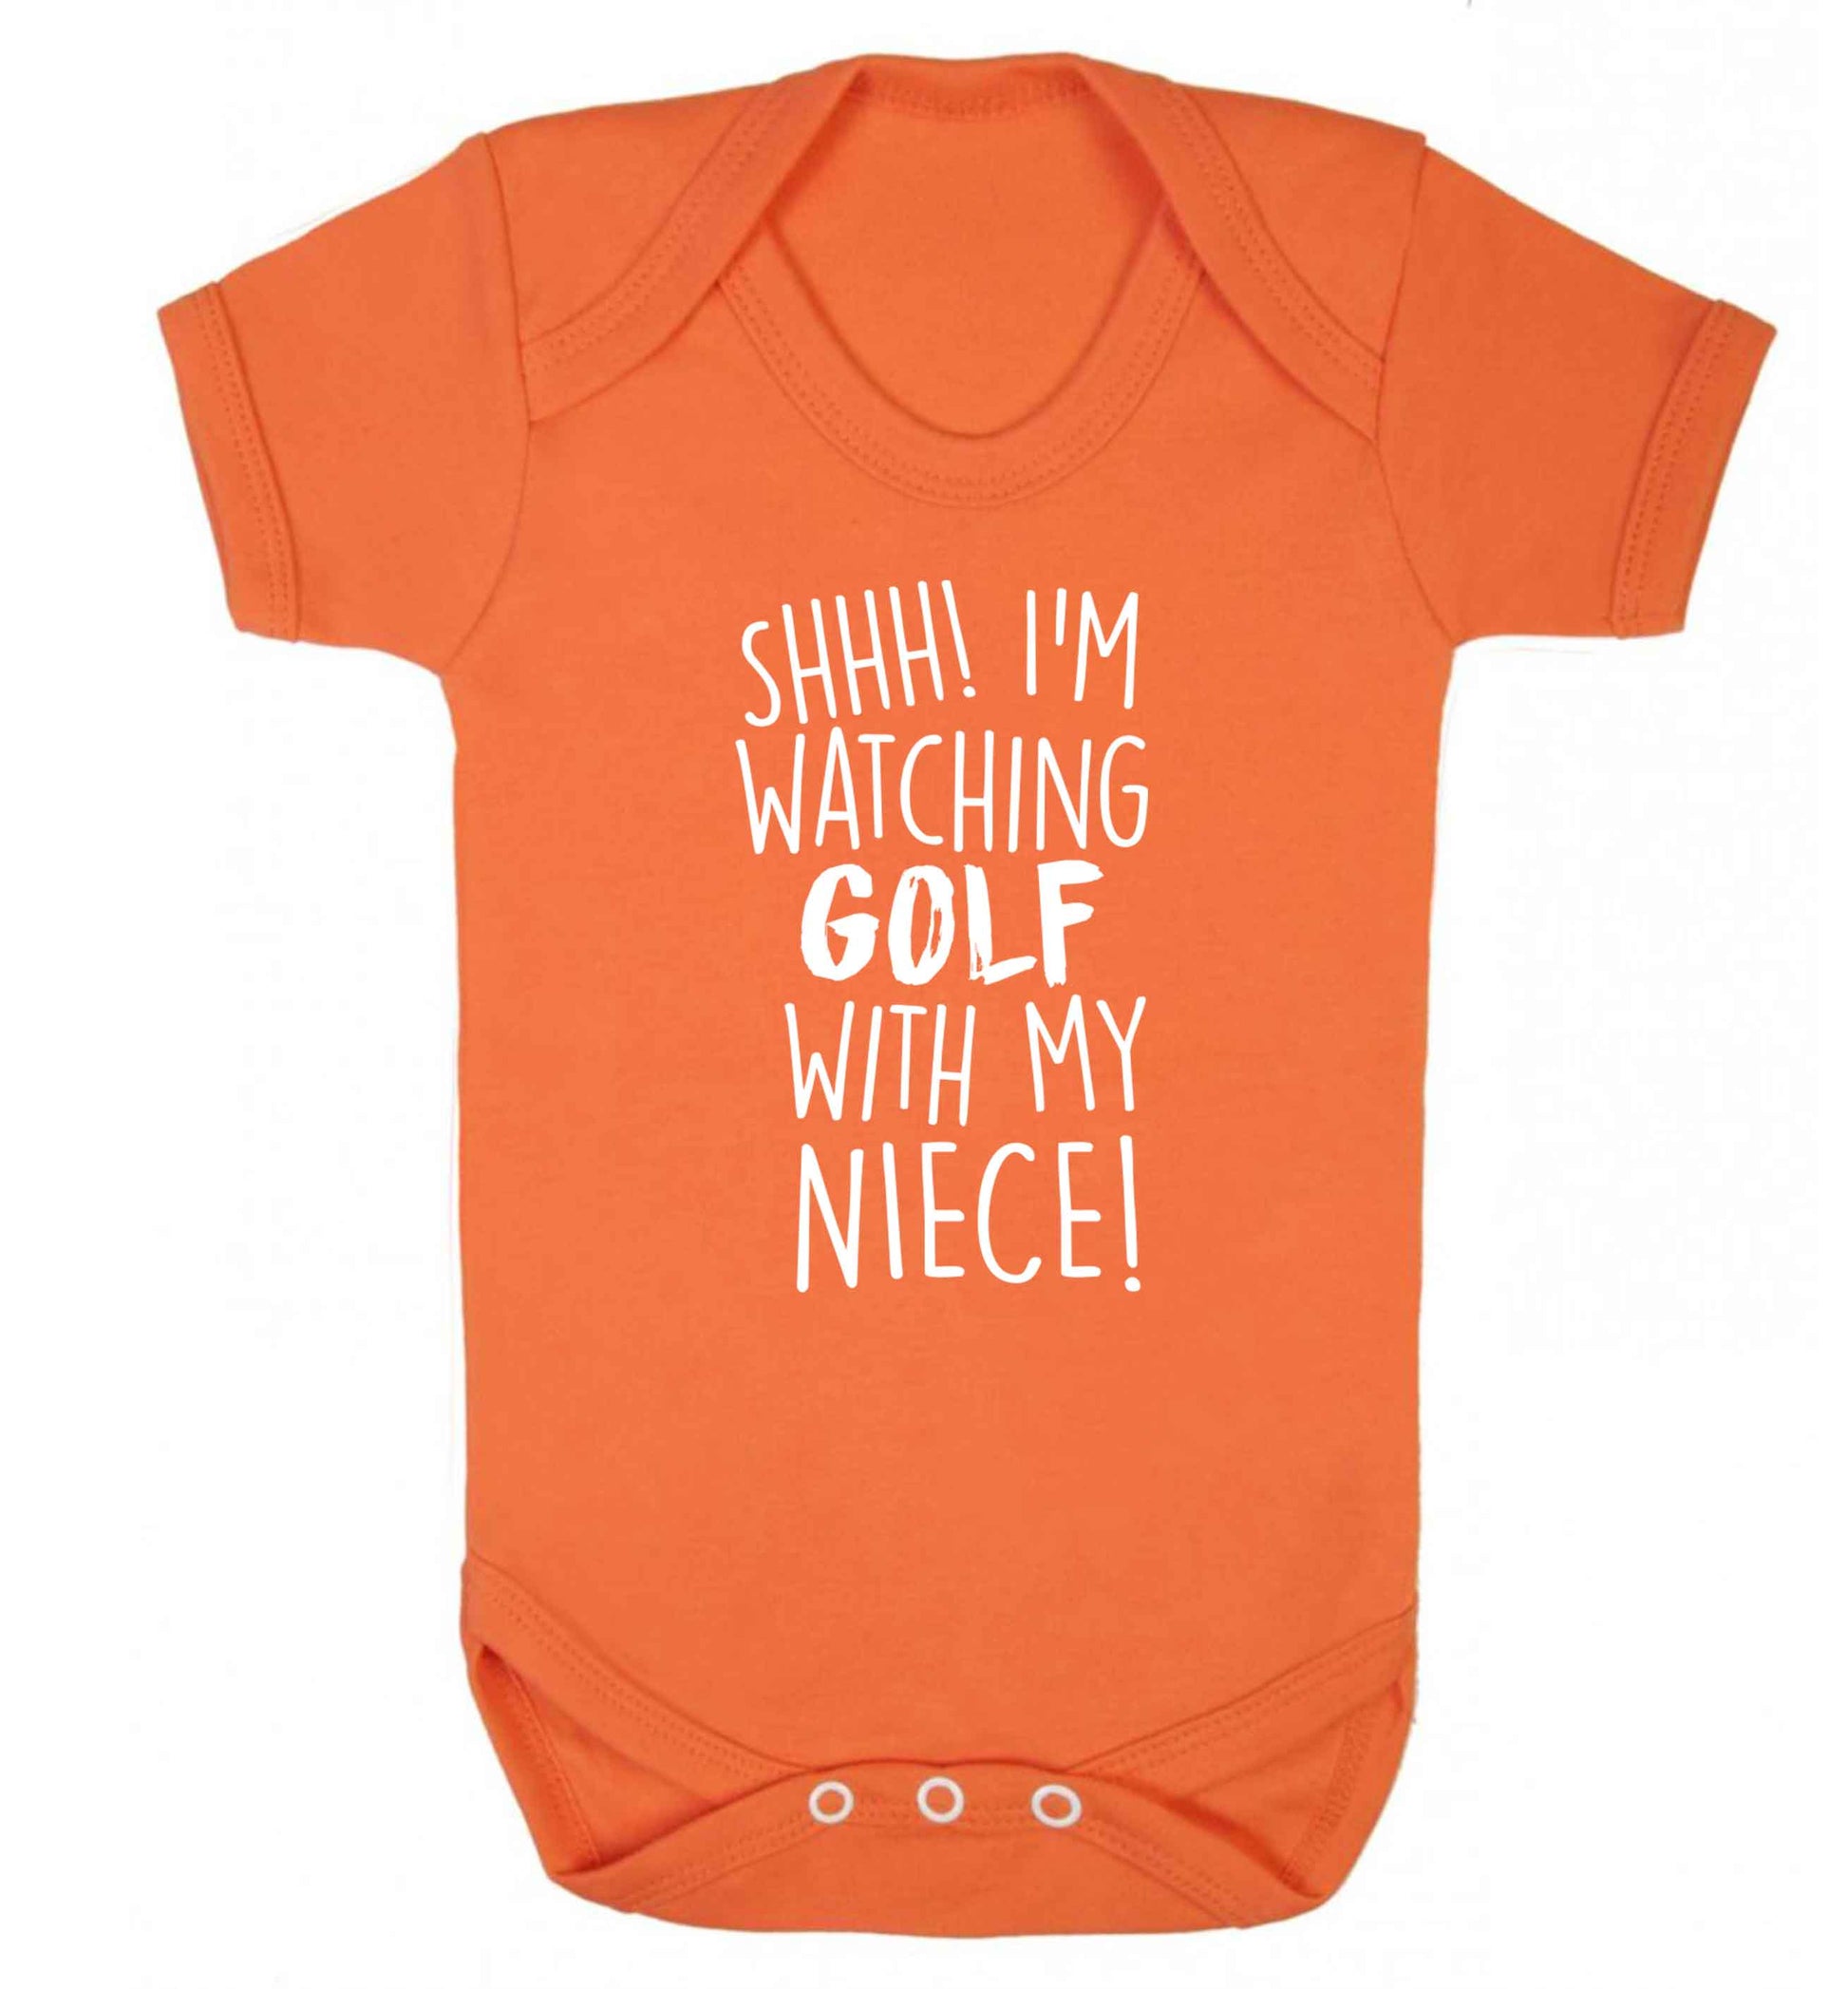 Shh I'm watching golf with my niece Baby Vest orange 18-24 months